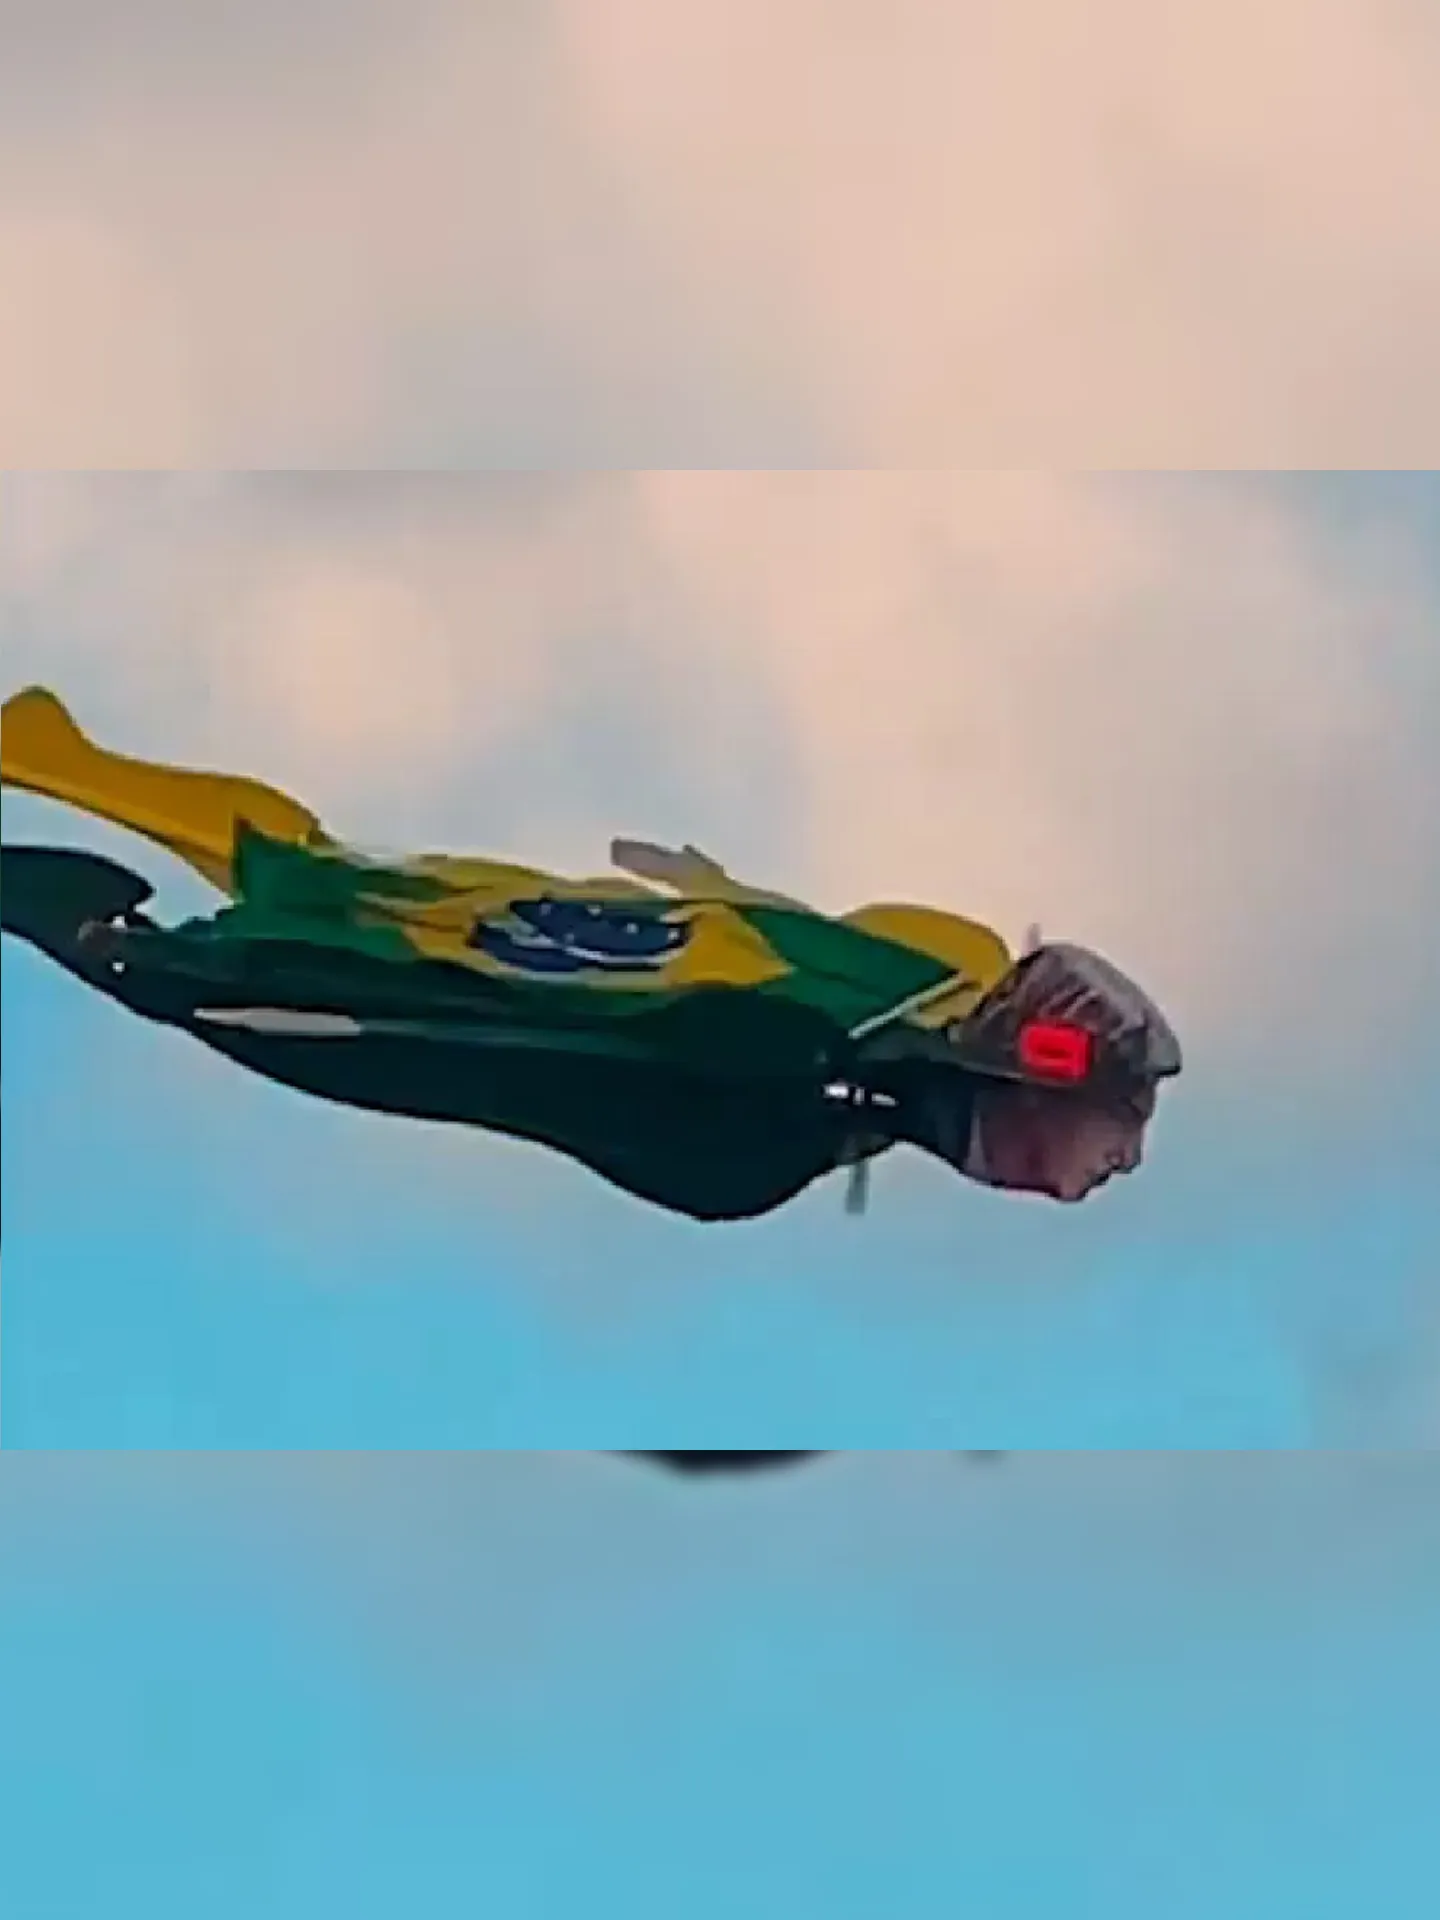 Drone voando pela cidade de João Pessoa com imagem de Bolsonaro